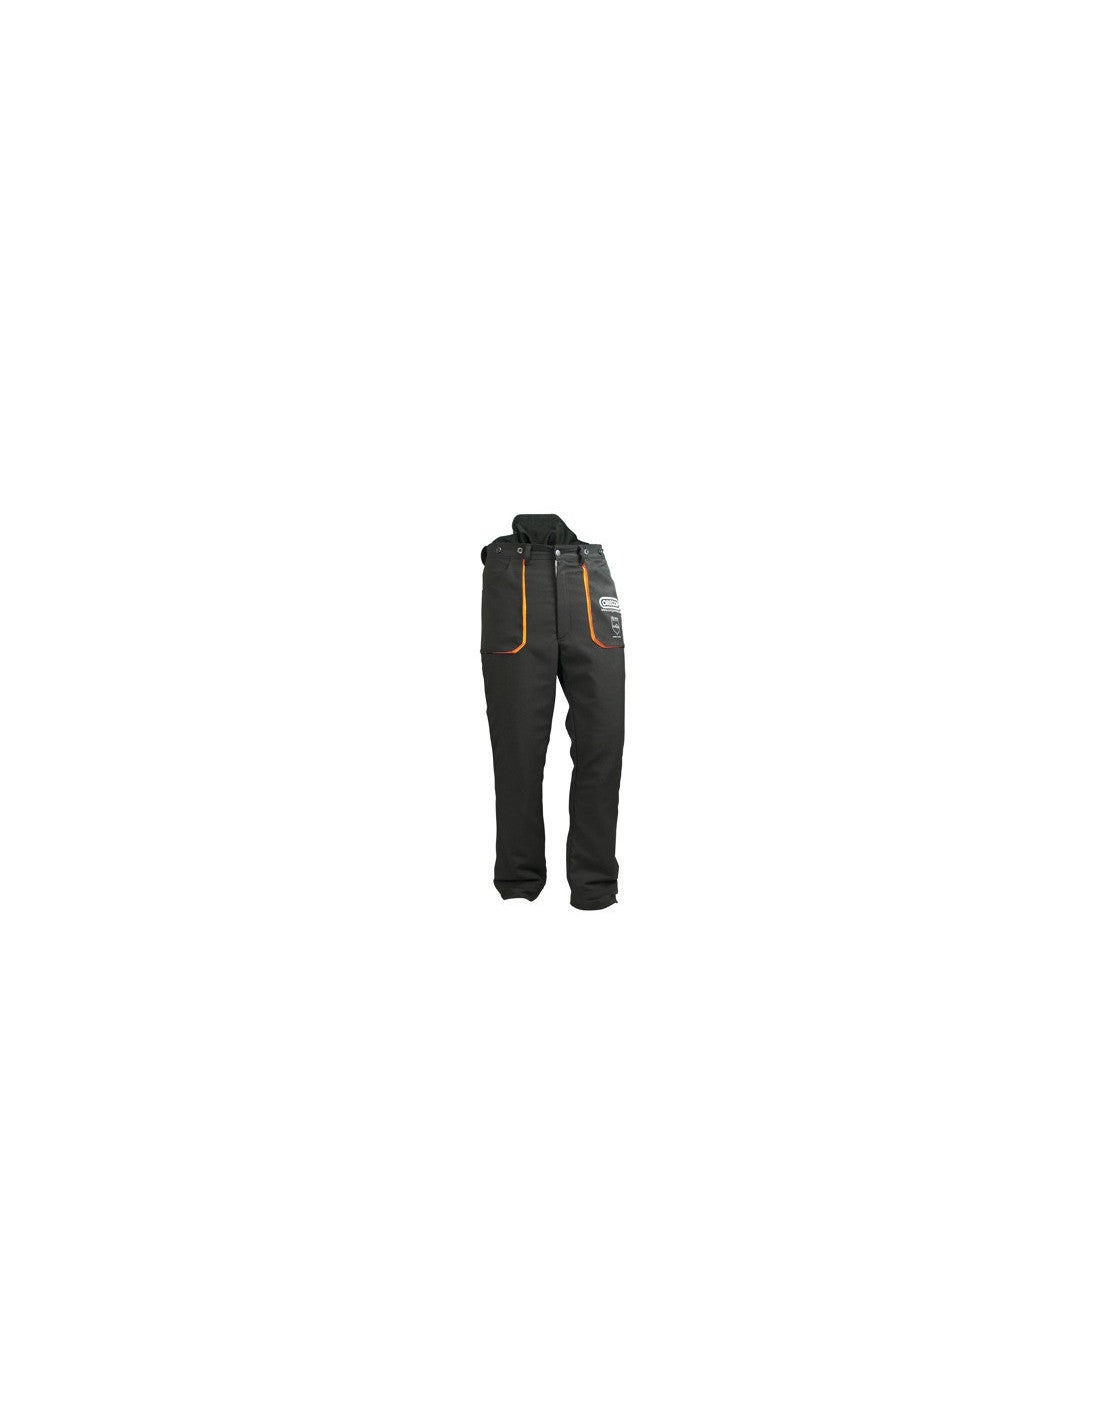 Oregon Scientific 295397 Pantalon de protection pour travail à la tronçonneuse Type C Taille L 